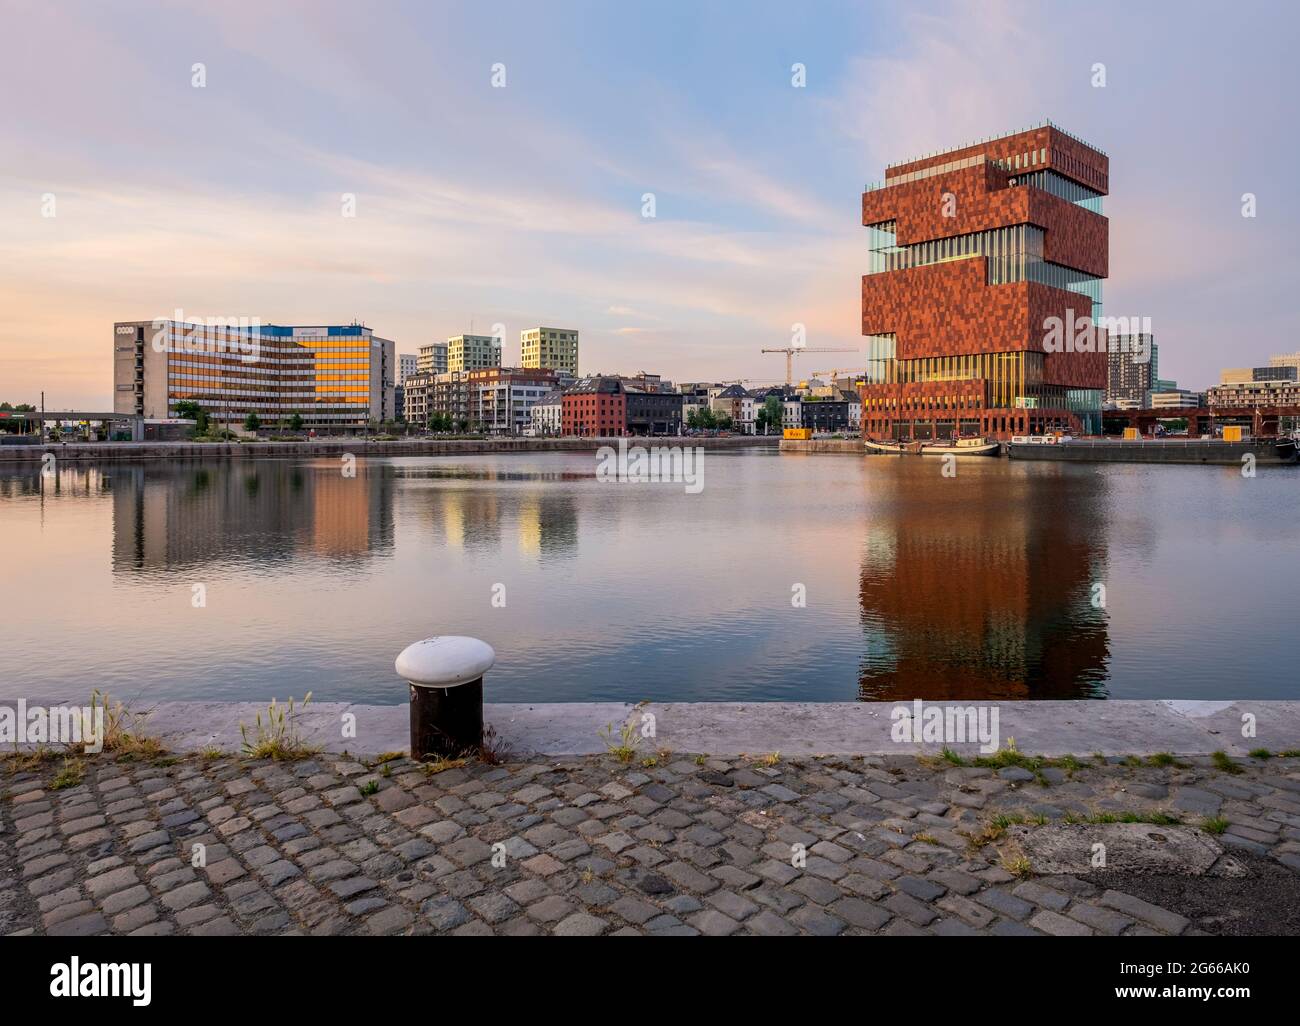 Anvers, Belgique – 3 juin 2020 : le musée MAS phare se reflète sur le quai de Bonaparte, dans la partie nord de la ville d'Anvers. Vieux bollard en métal Banque D'Images